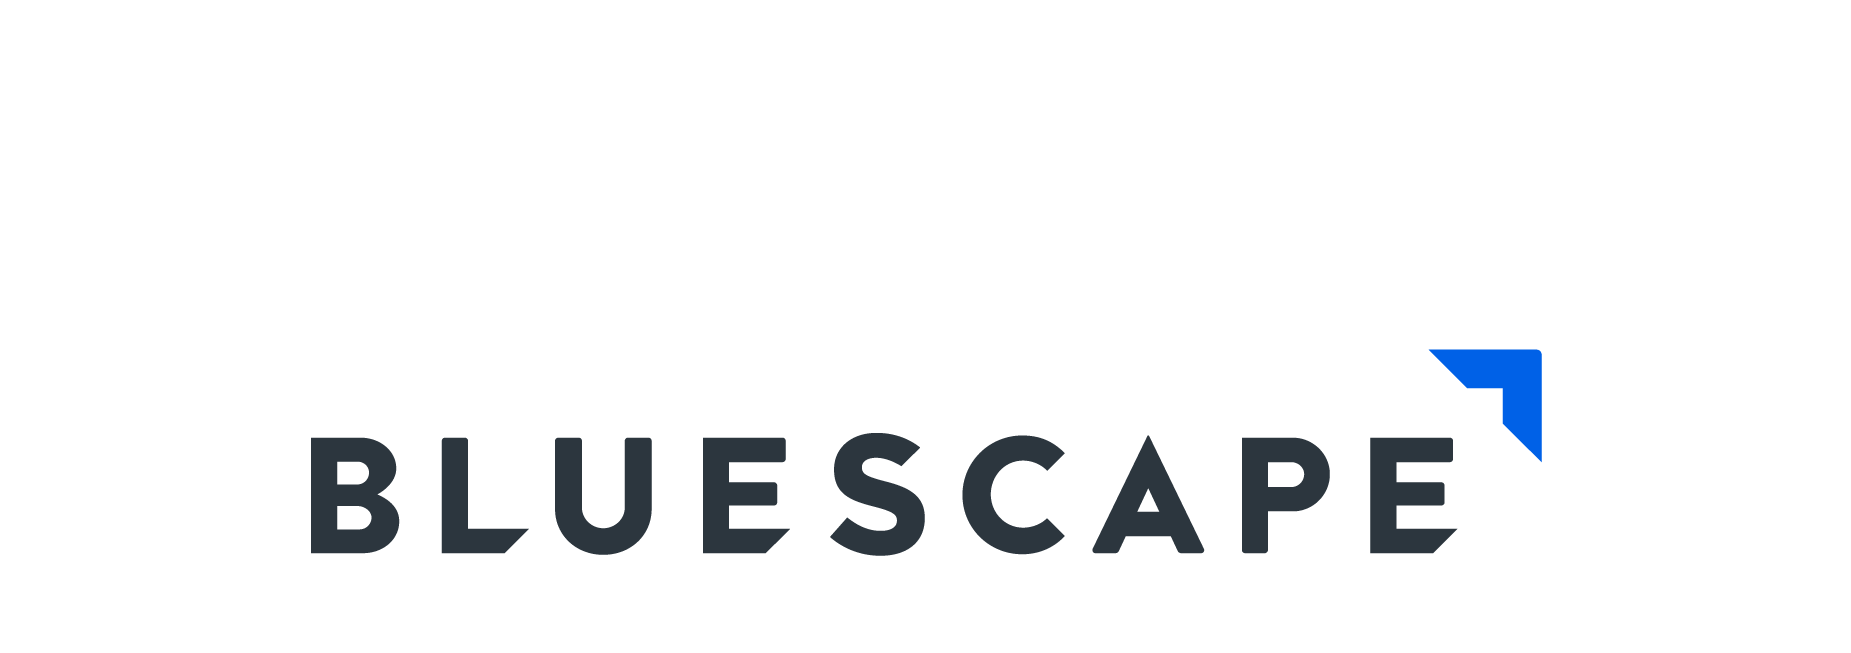 Bluescape-Logo-(Final)-Titmouse-Page-2